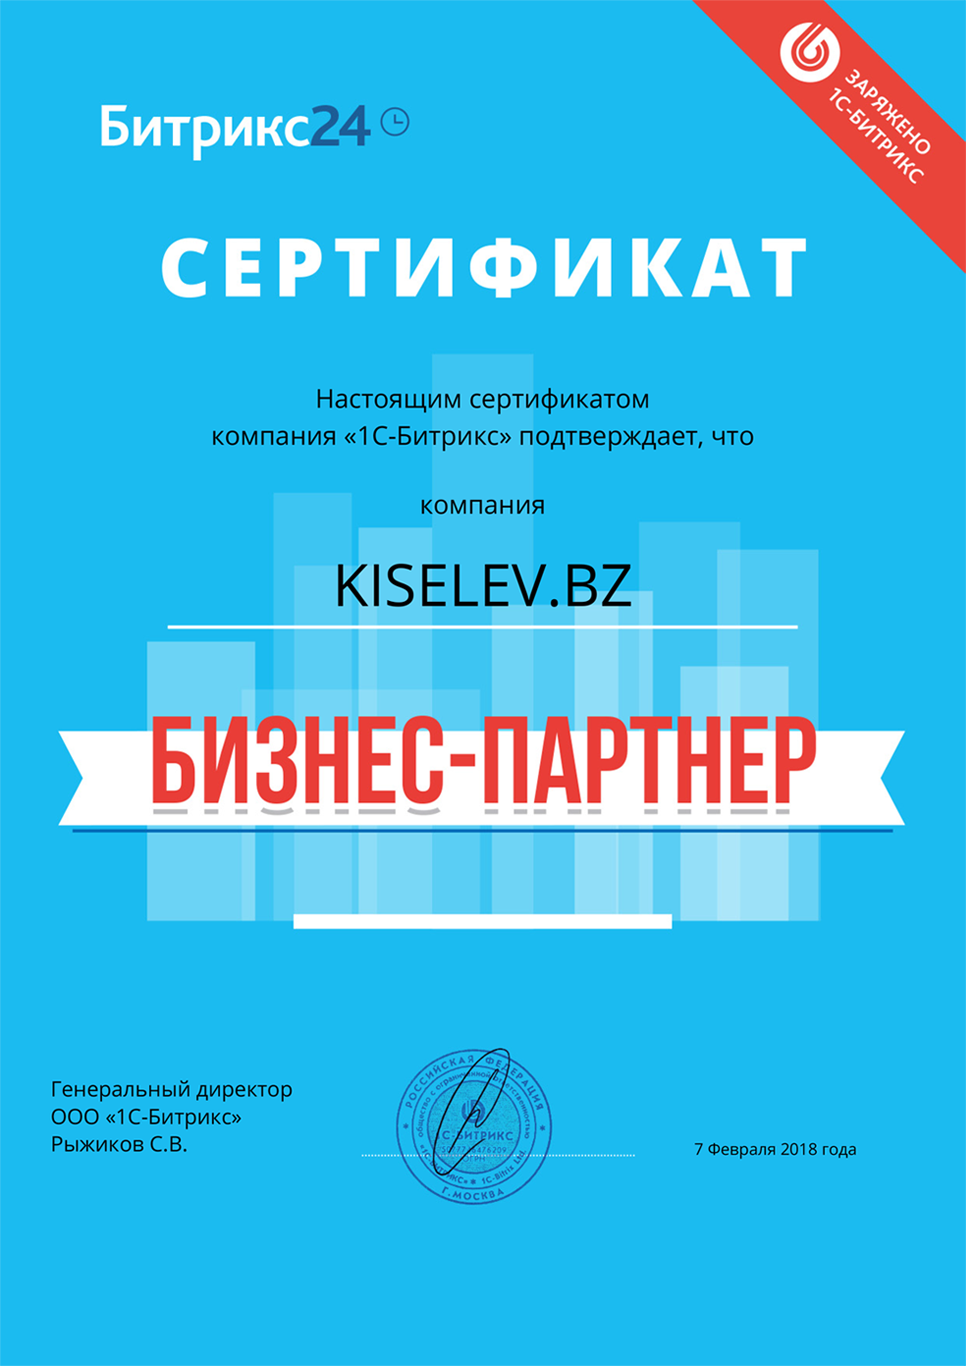 Сертификат партнёра по АМОСРМ в Солигаличе